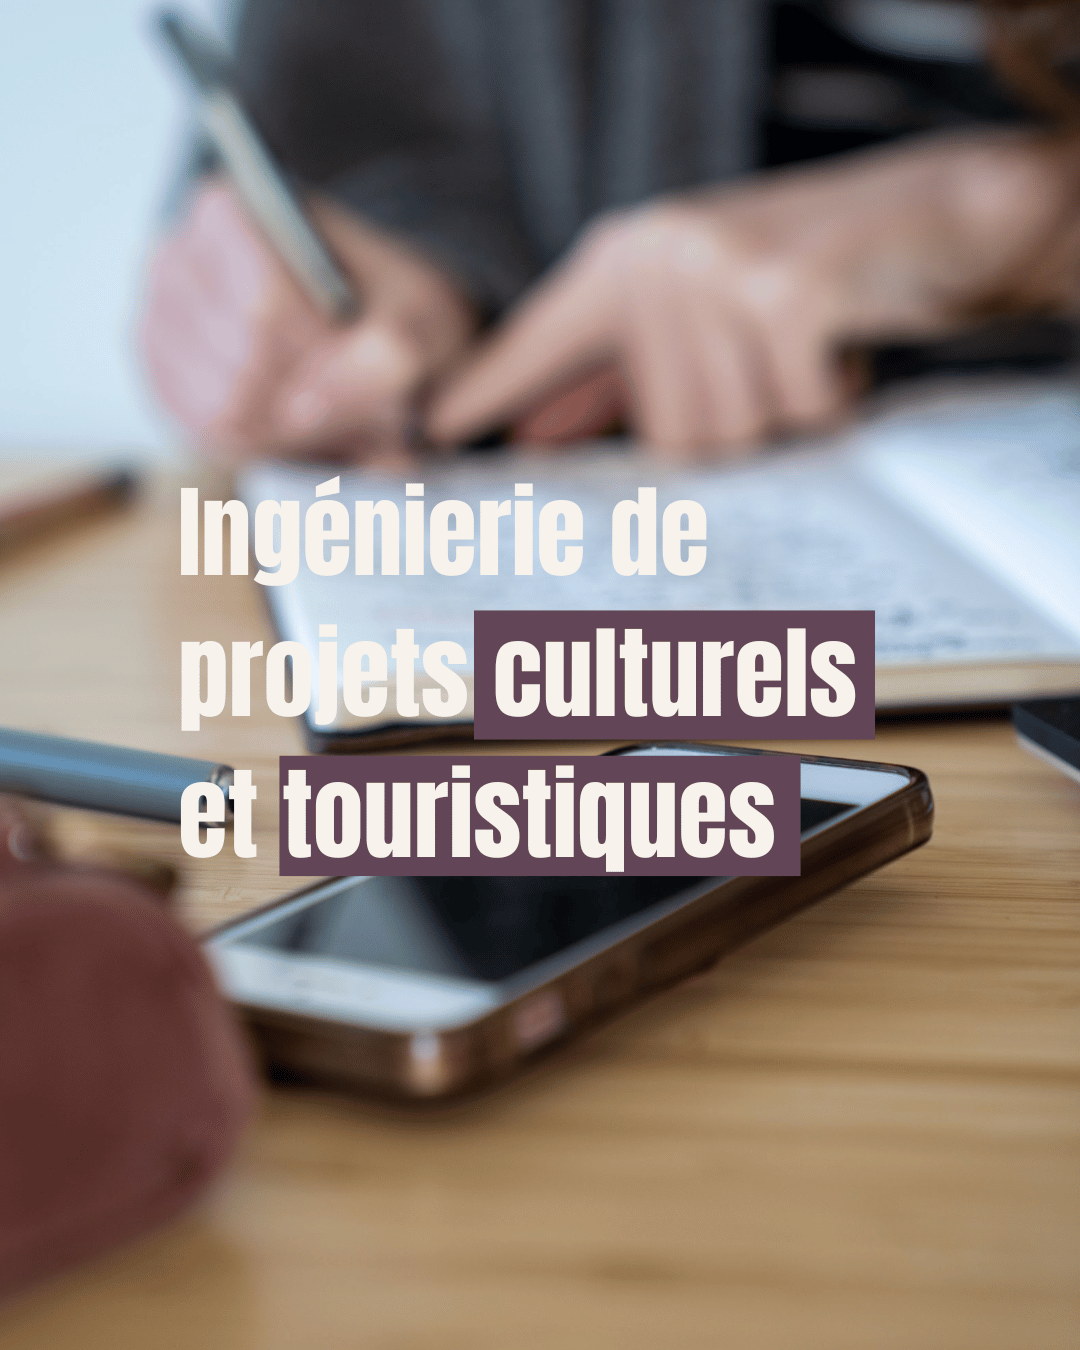 Au service du patrimoine - Ingénierie de projets culturels et touristiques